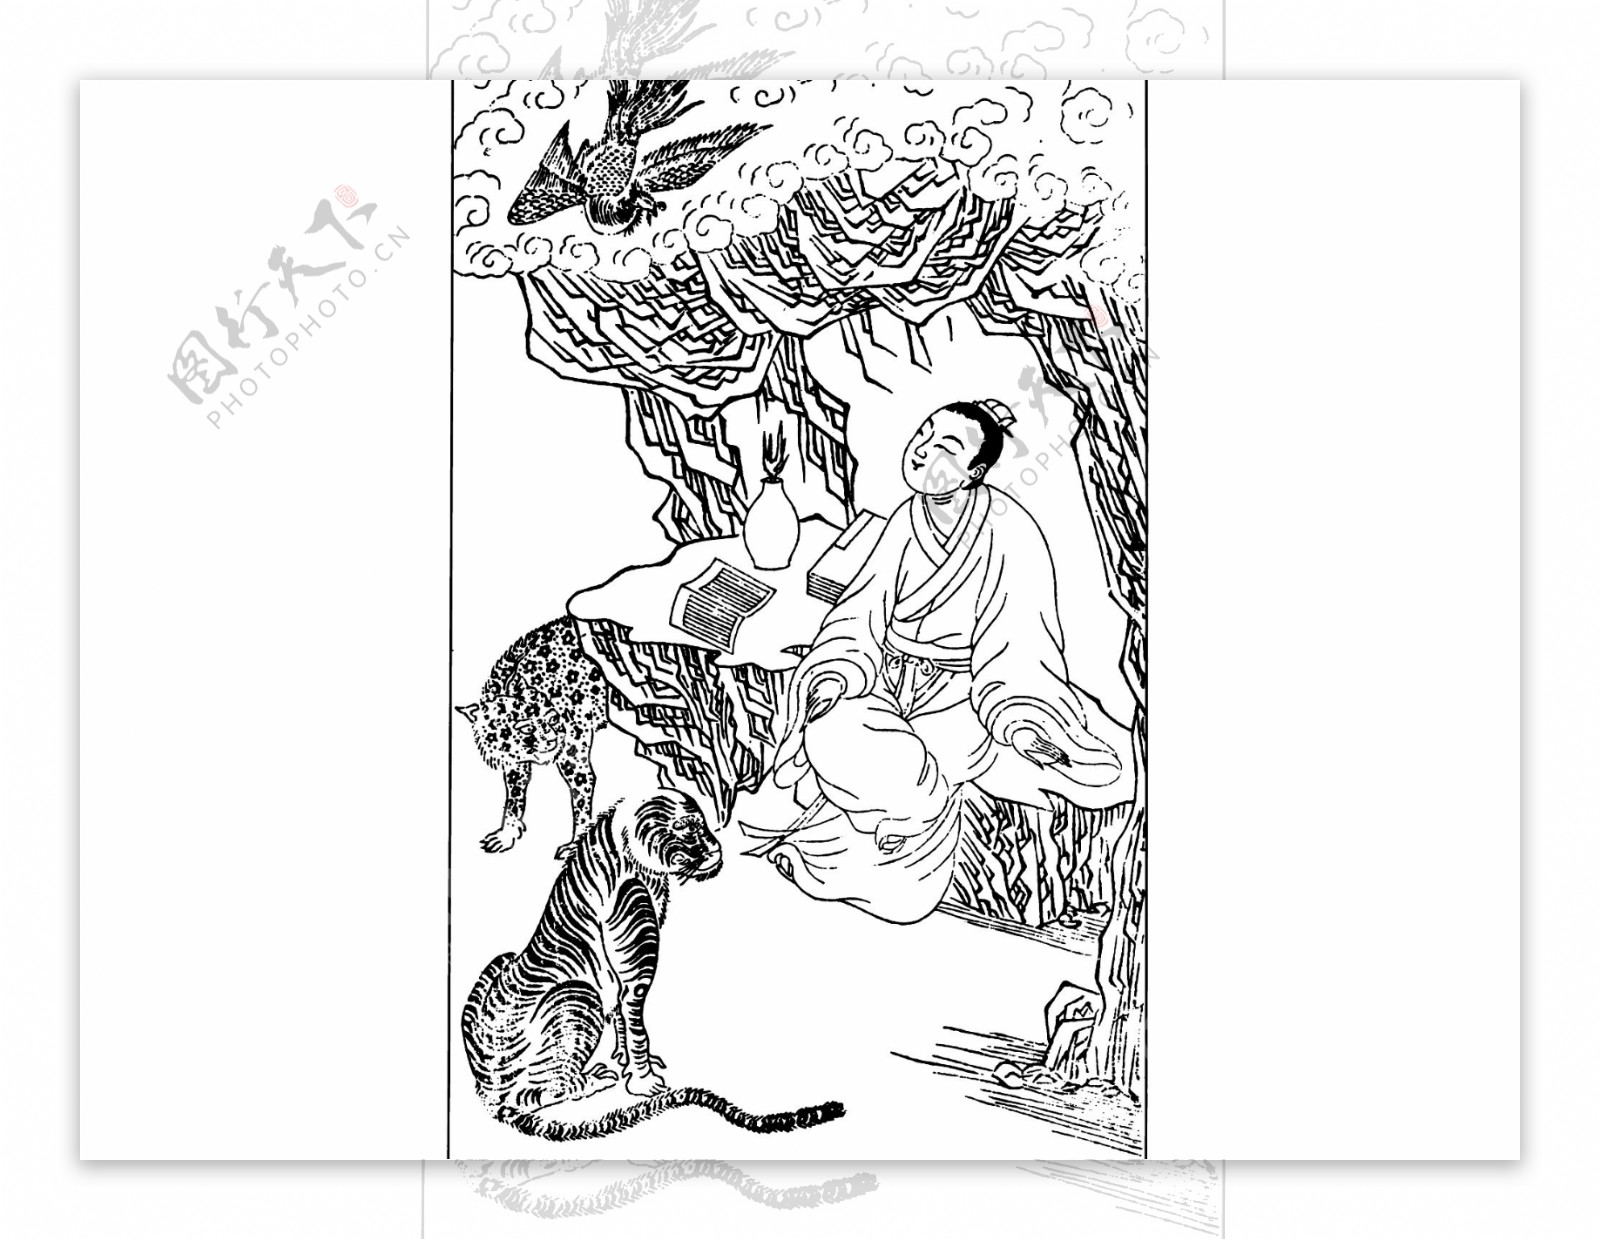 中国风古人物生活线稿插画144